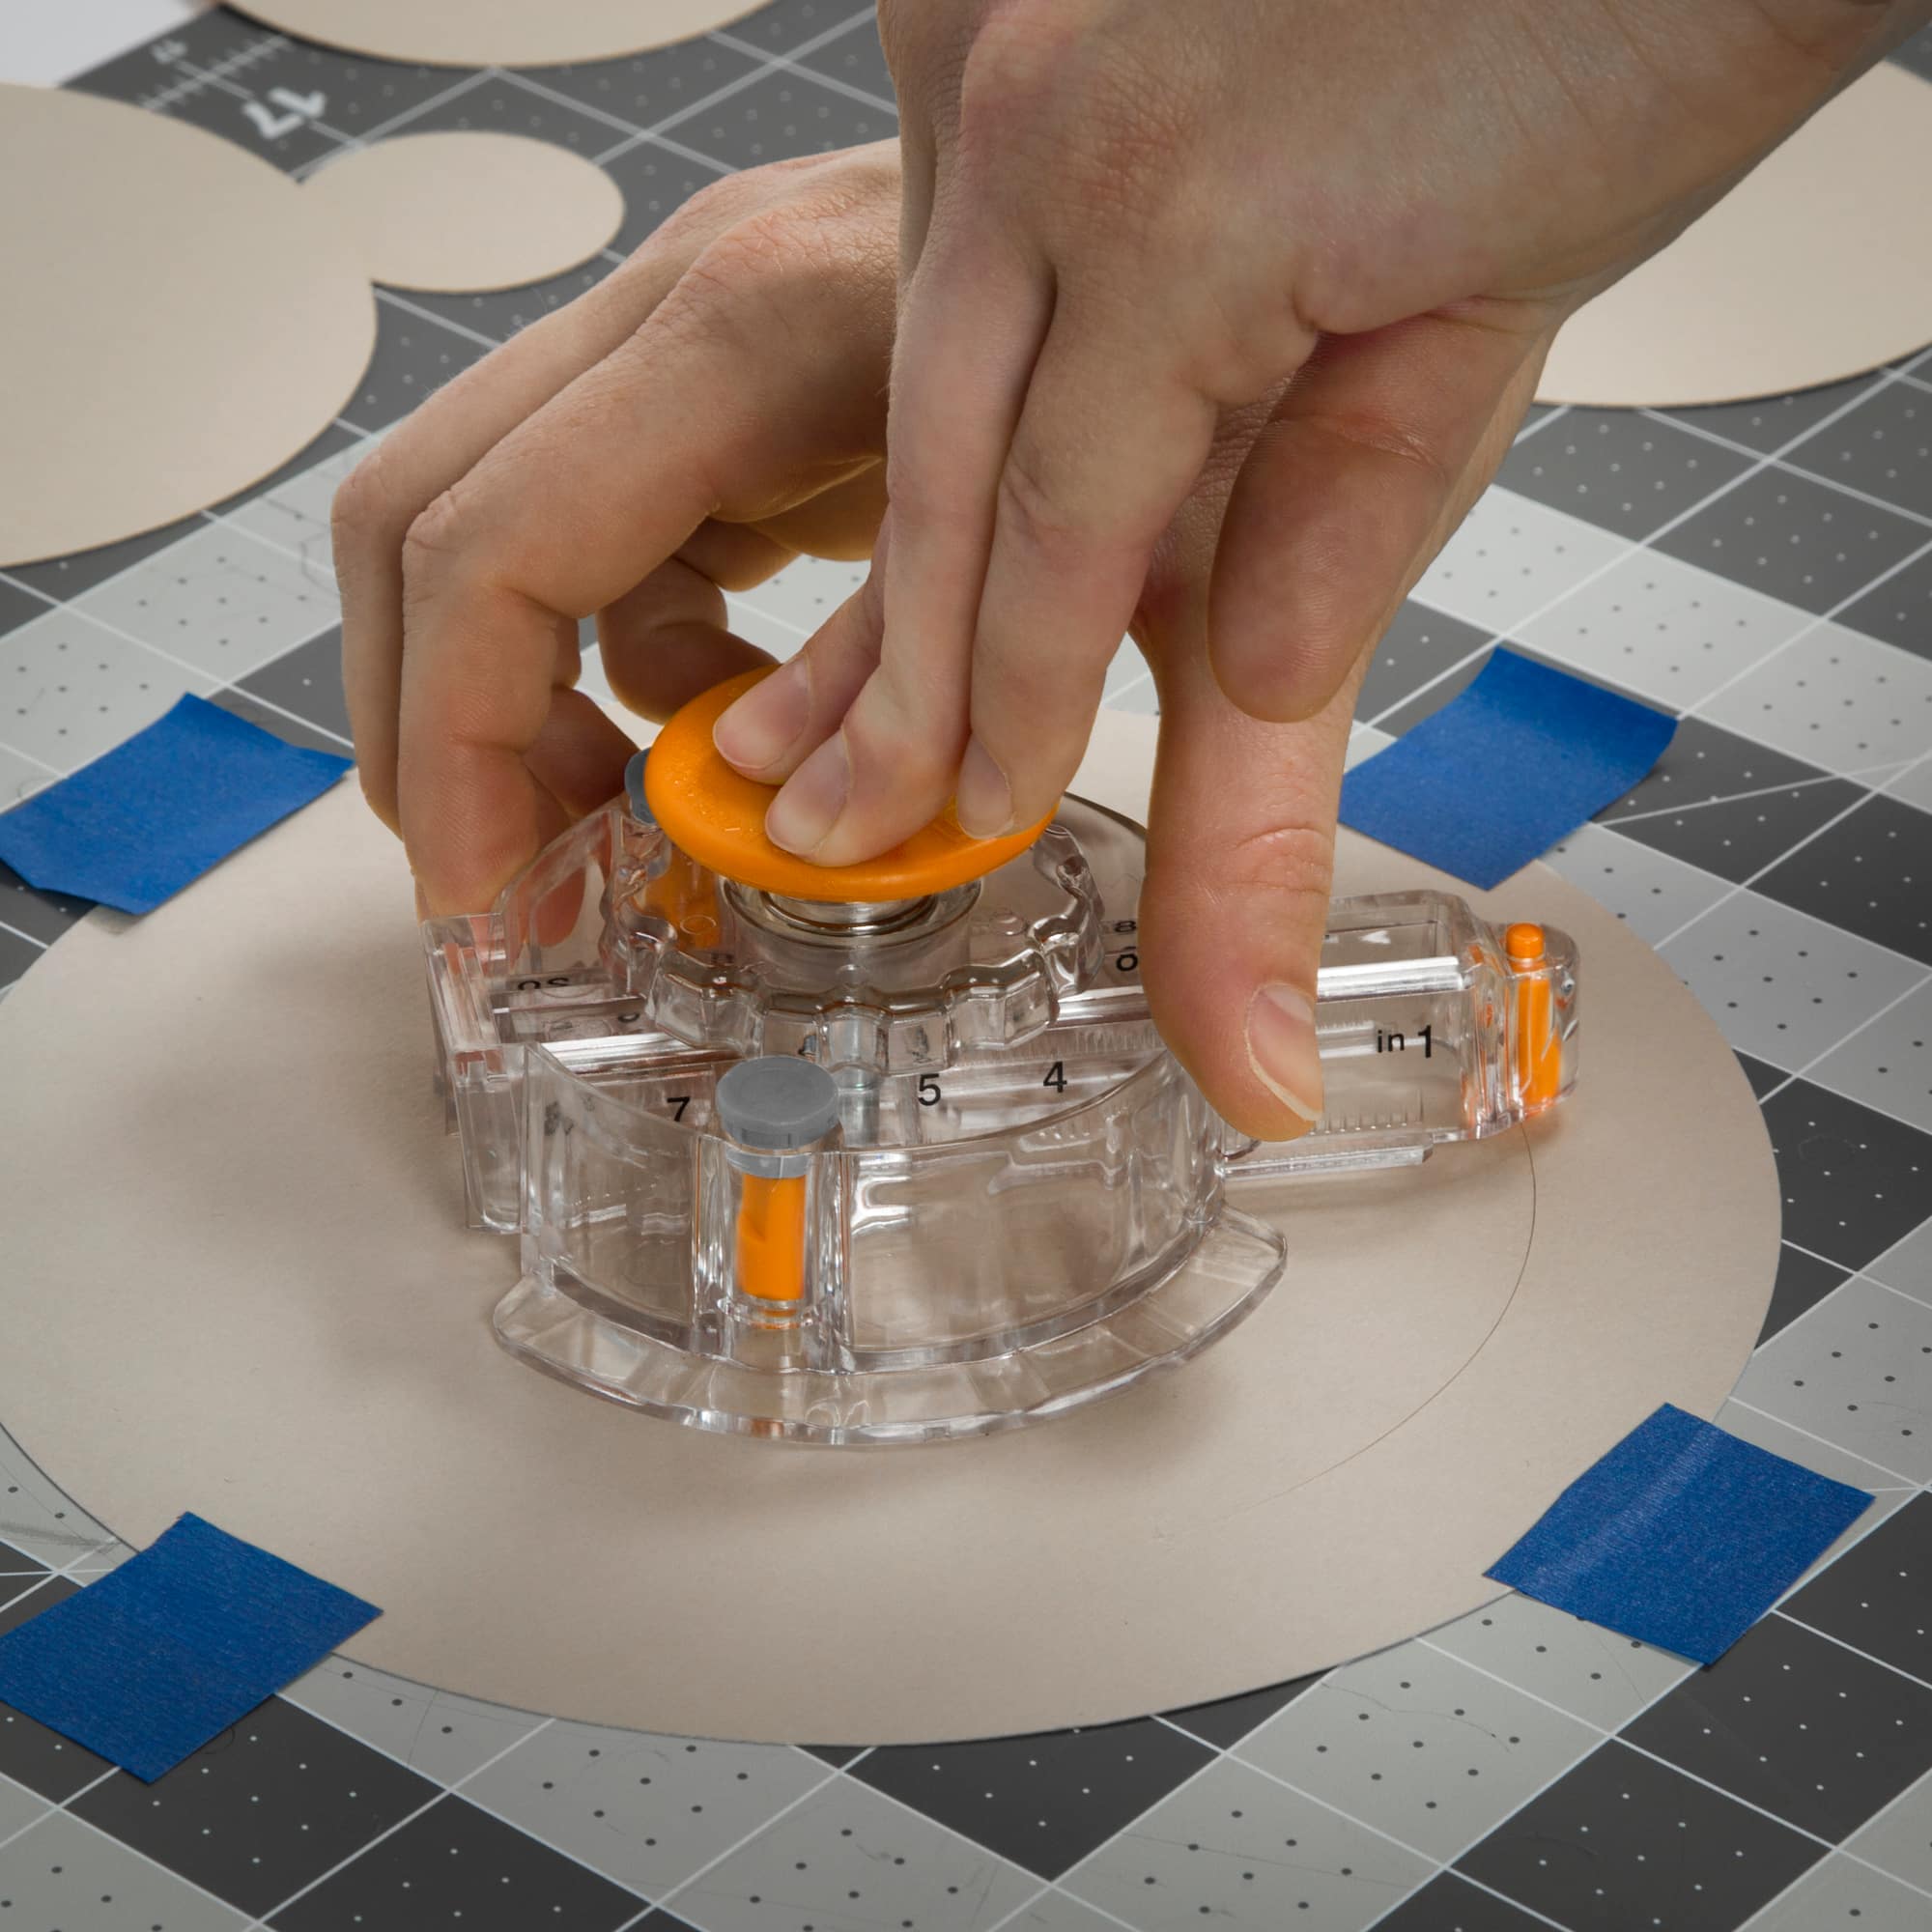 Circle Cutter, Circle Cutter for Paper Crafts, Paper Circle Cutter